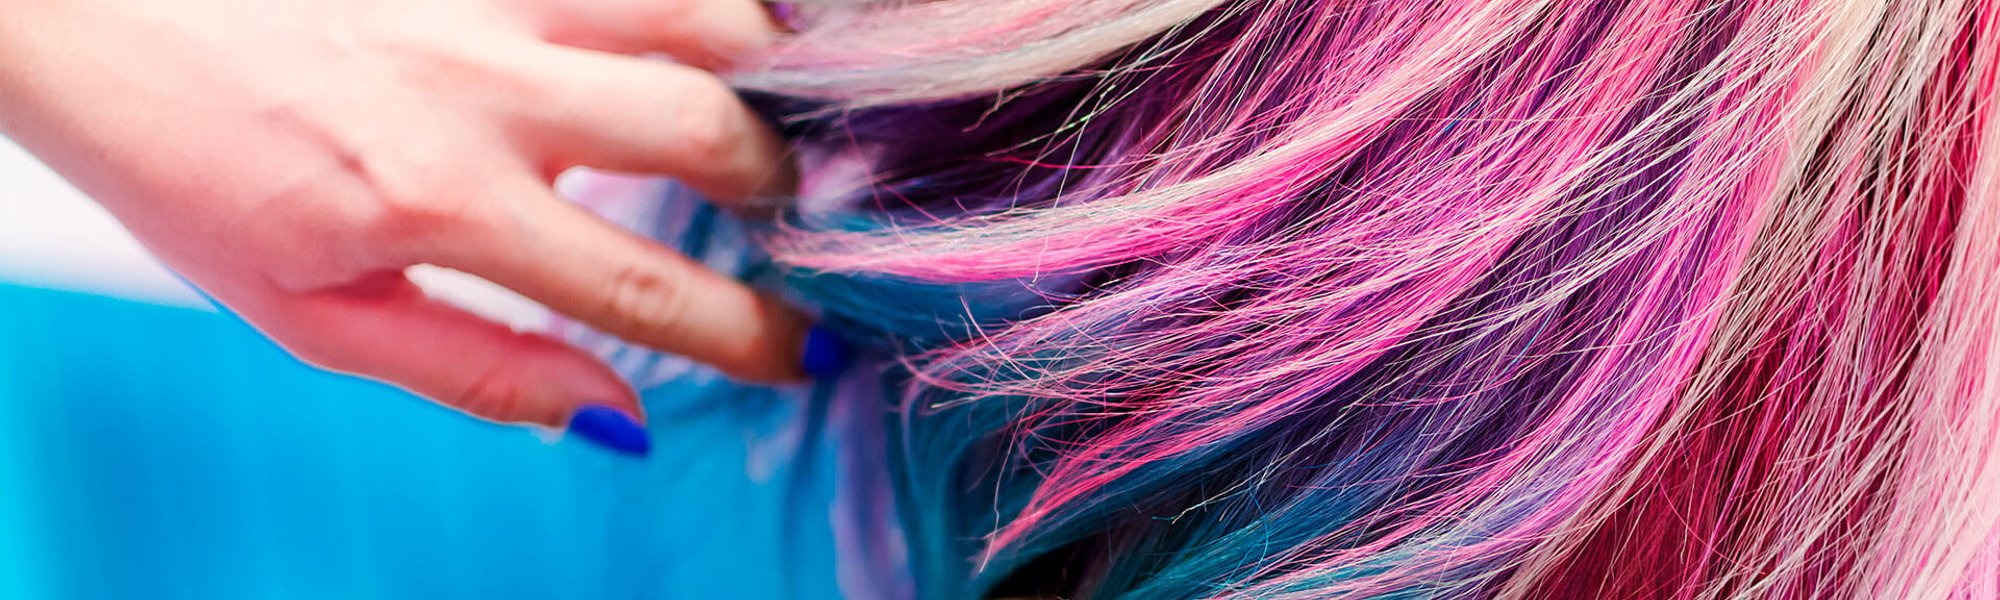 Cuidados capilares: cabelo colorido